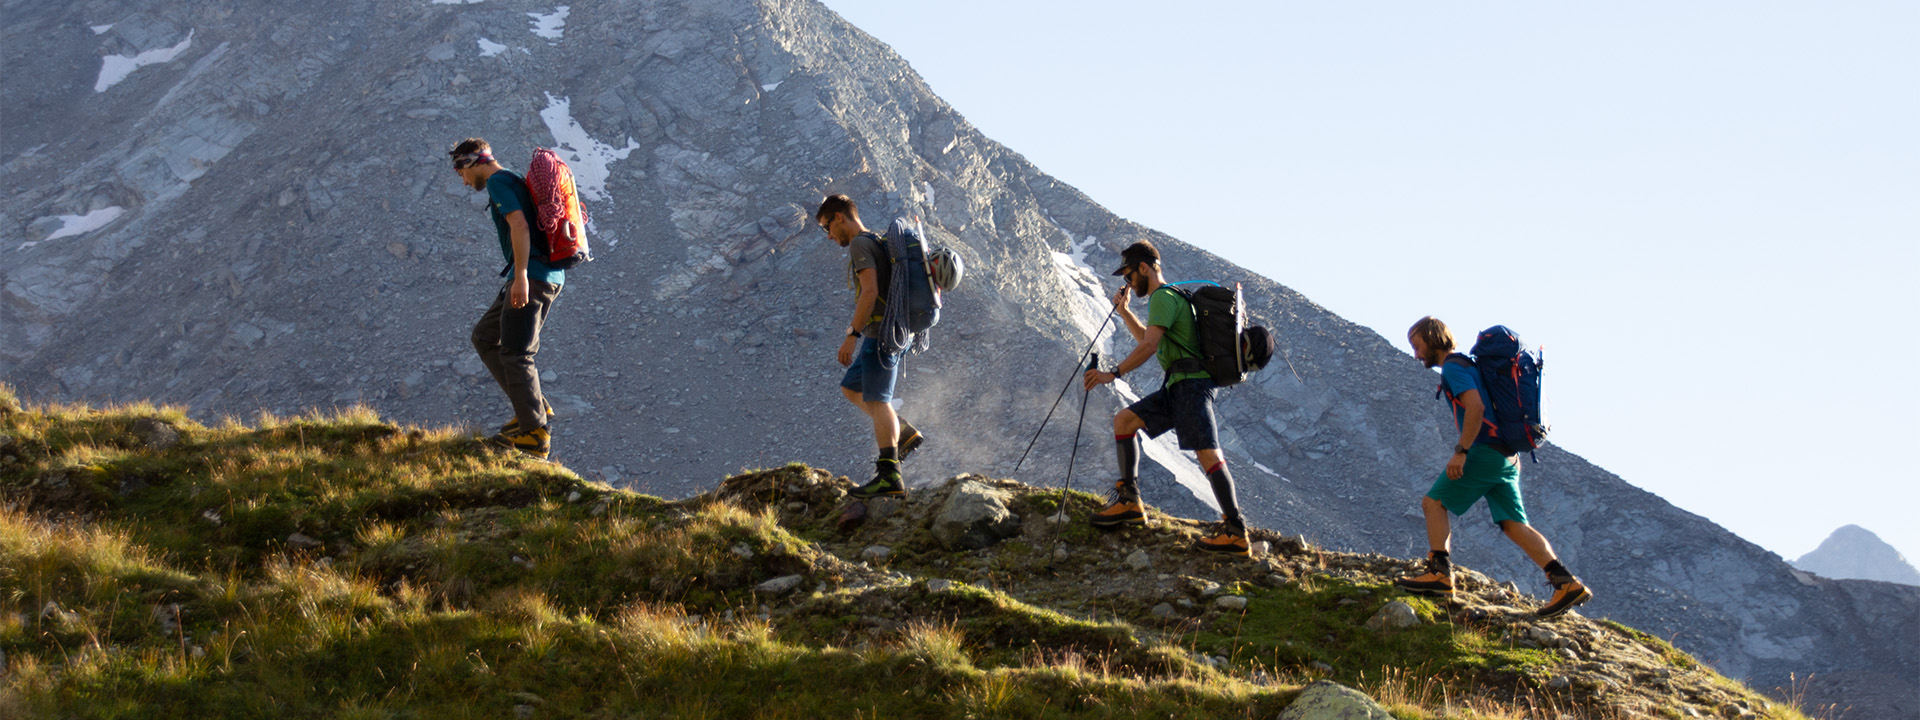 Sicherheit am Berg – 4 Wanderer im Gebirge